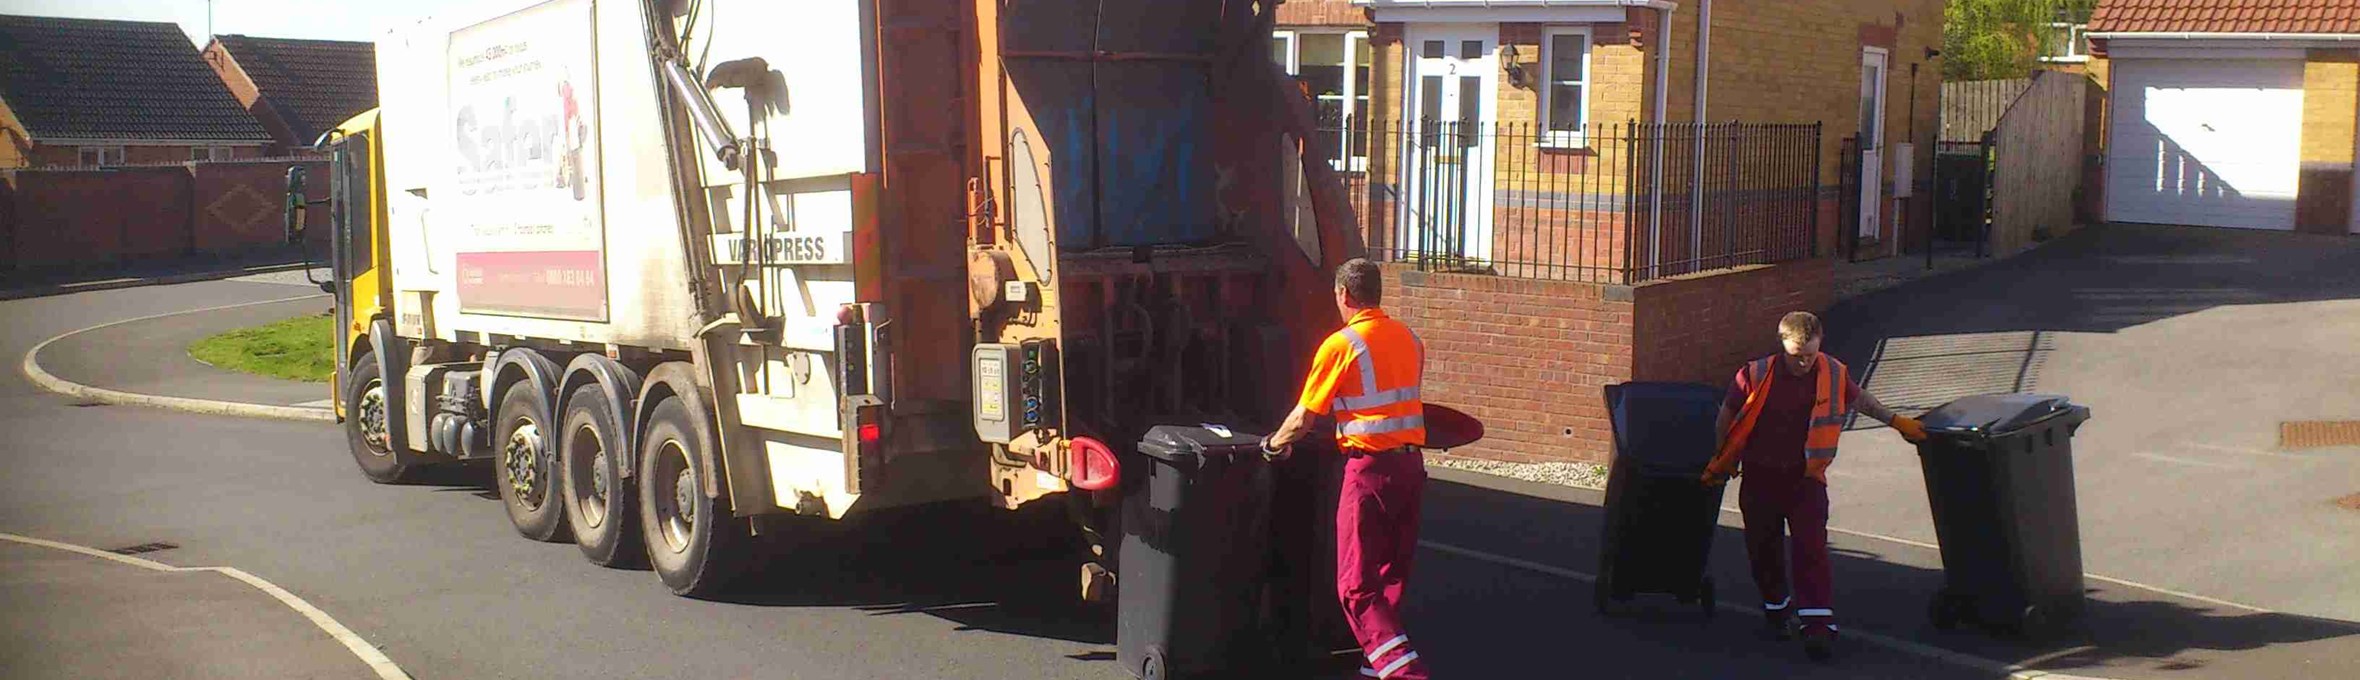 Bin men loading bins onto the bin lorry